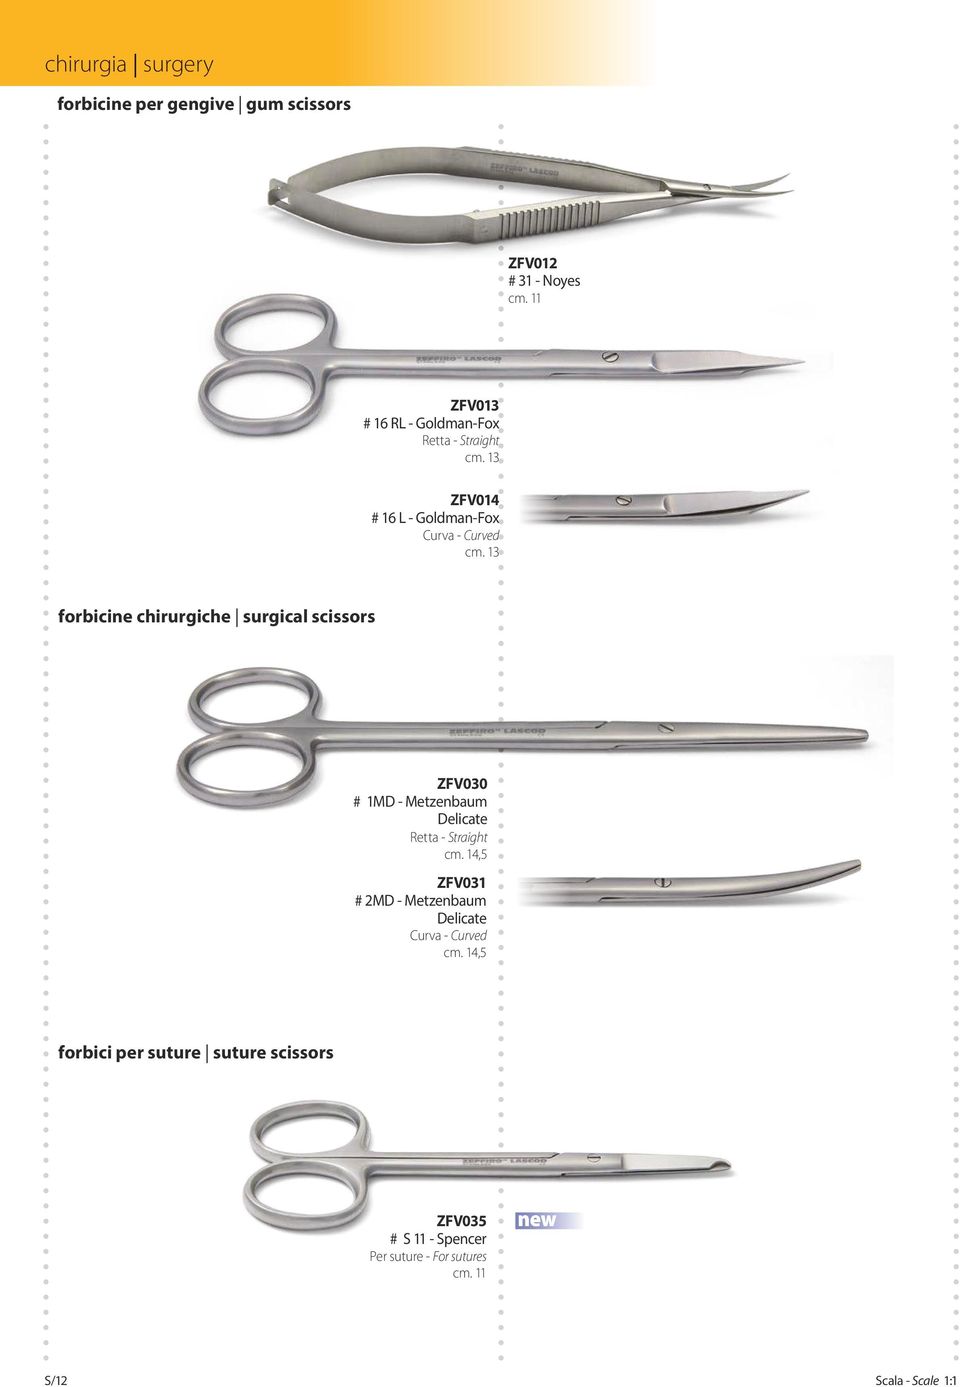 13 forbicine chirurgiche surgical scissors ZFV030 # 1MD - Metzenbaum Delicate Retta - Straight cm.